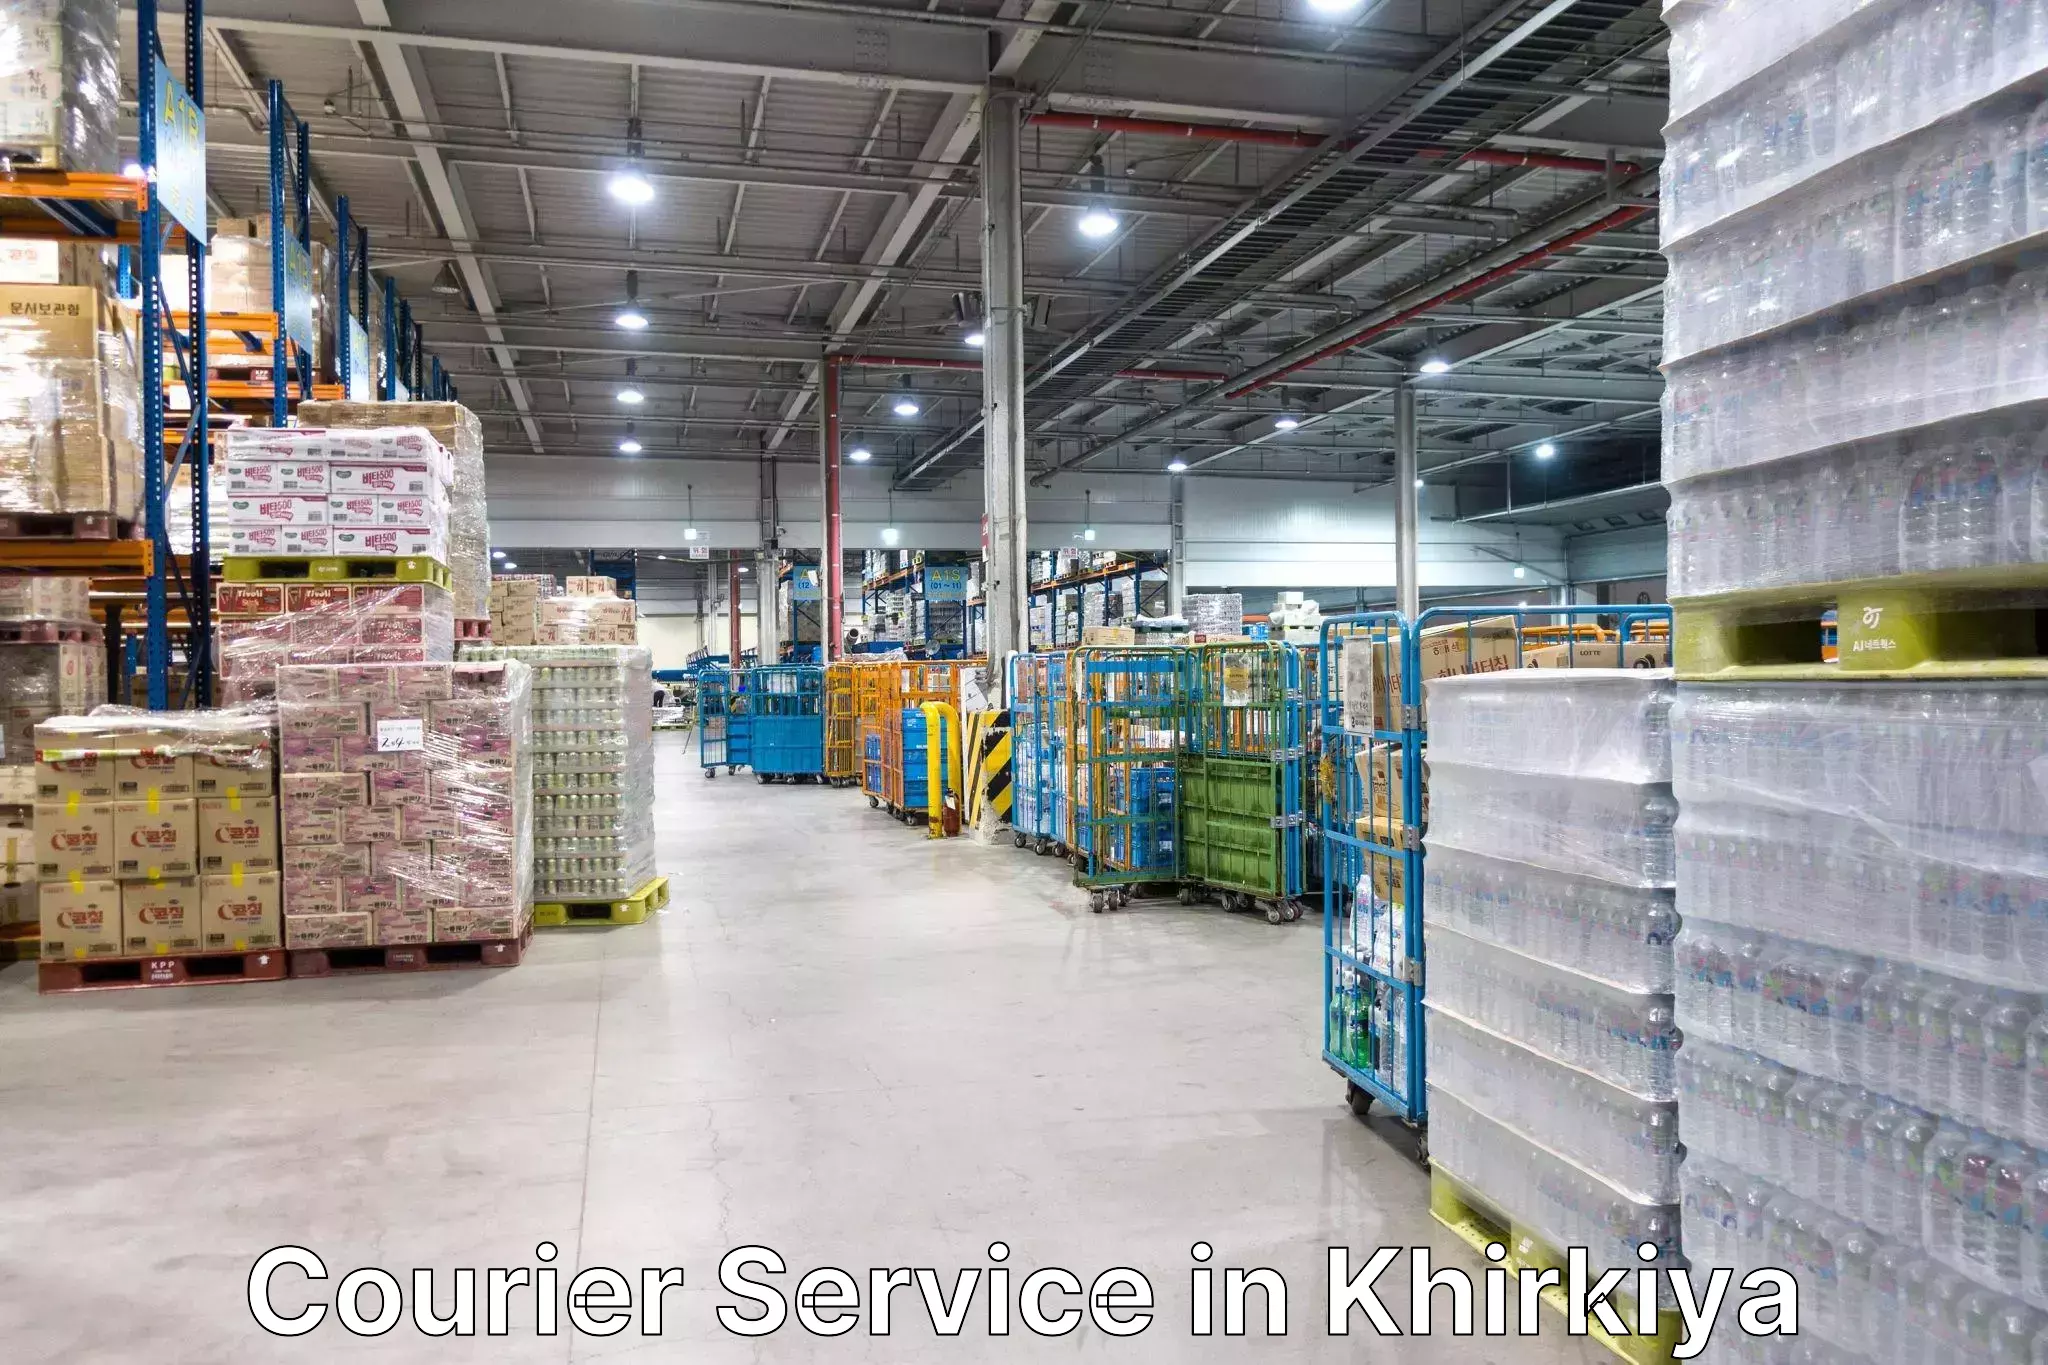 Affordable parcel service in Khirkiya